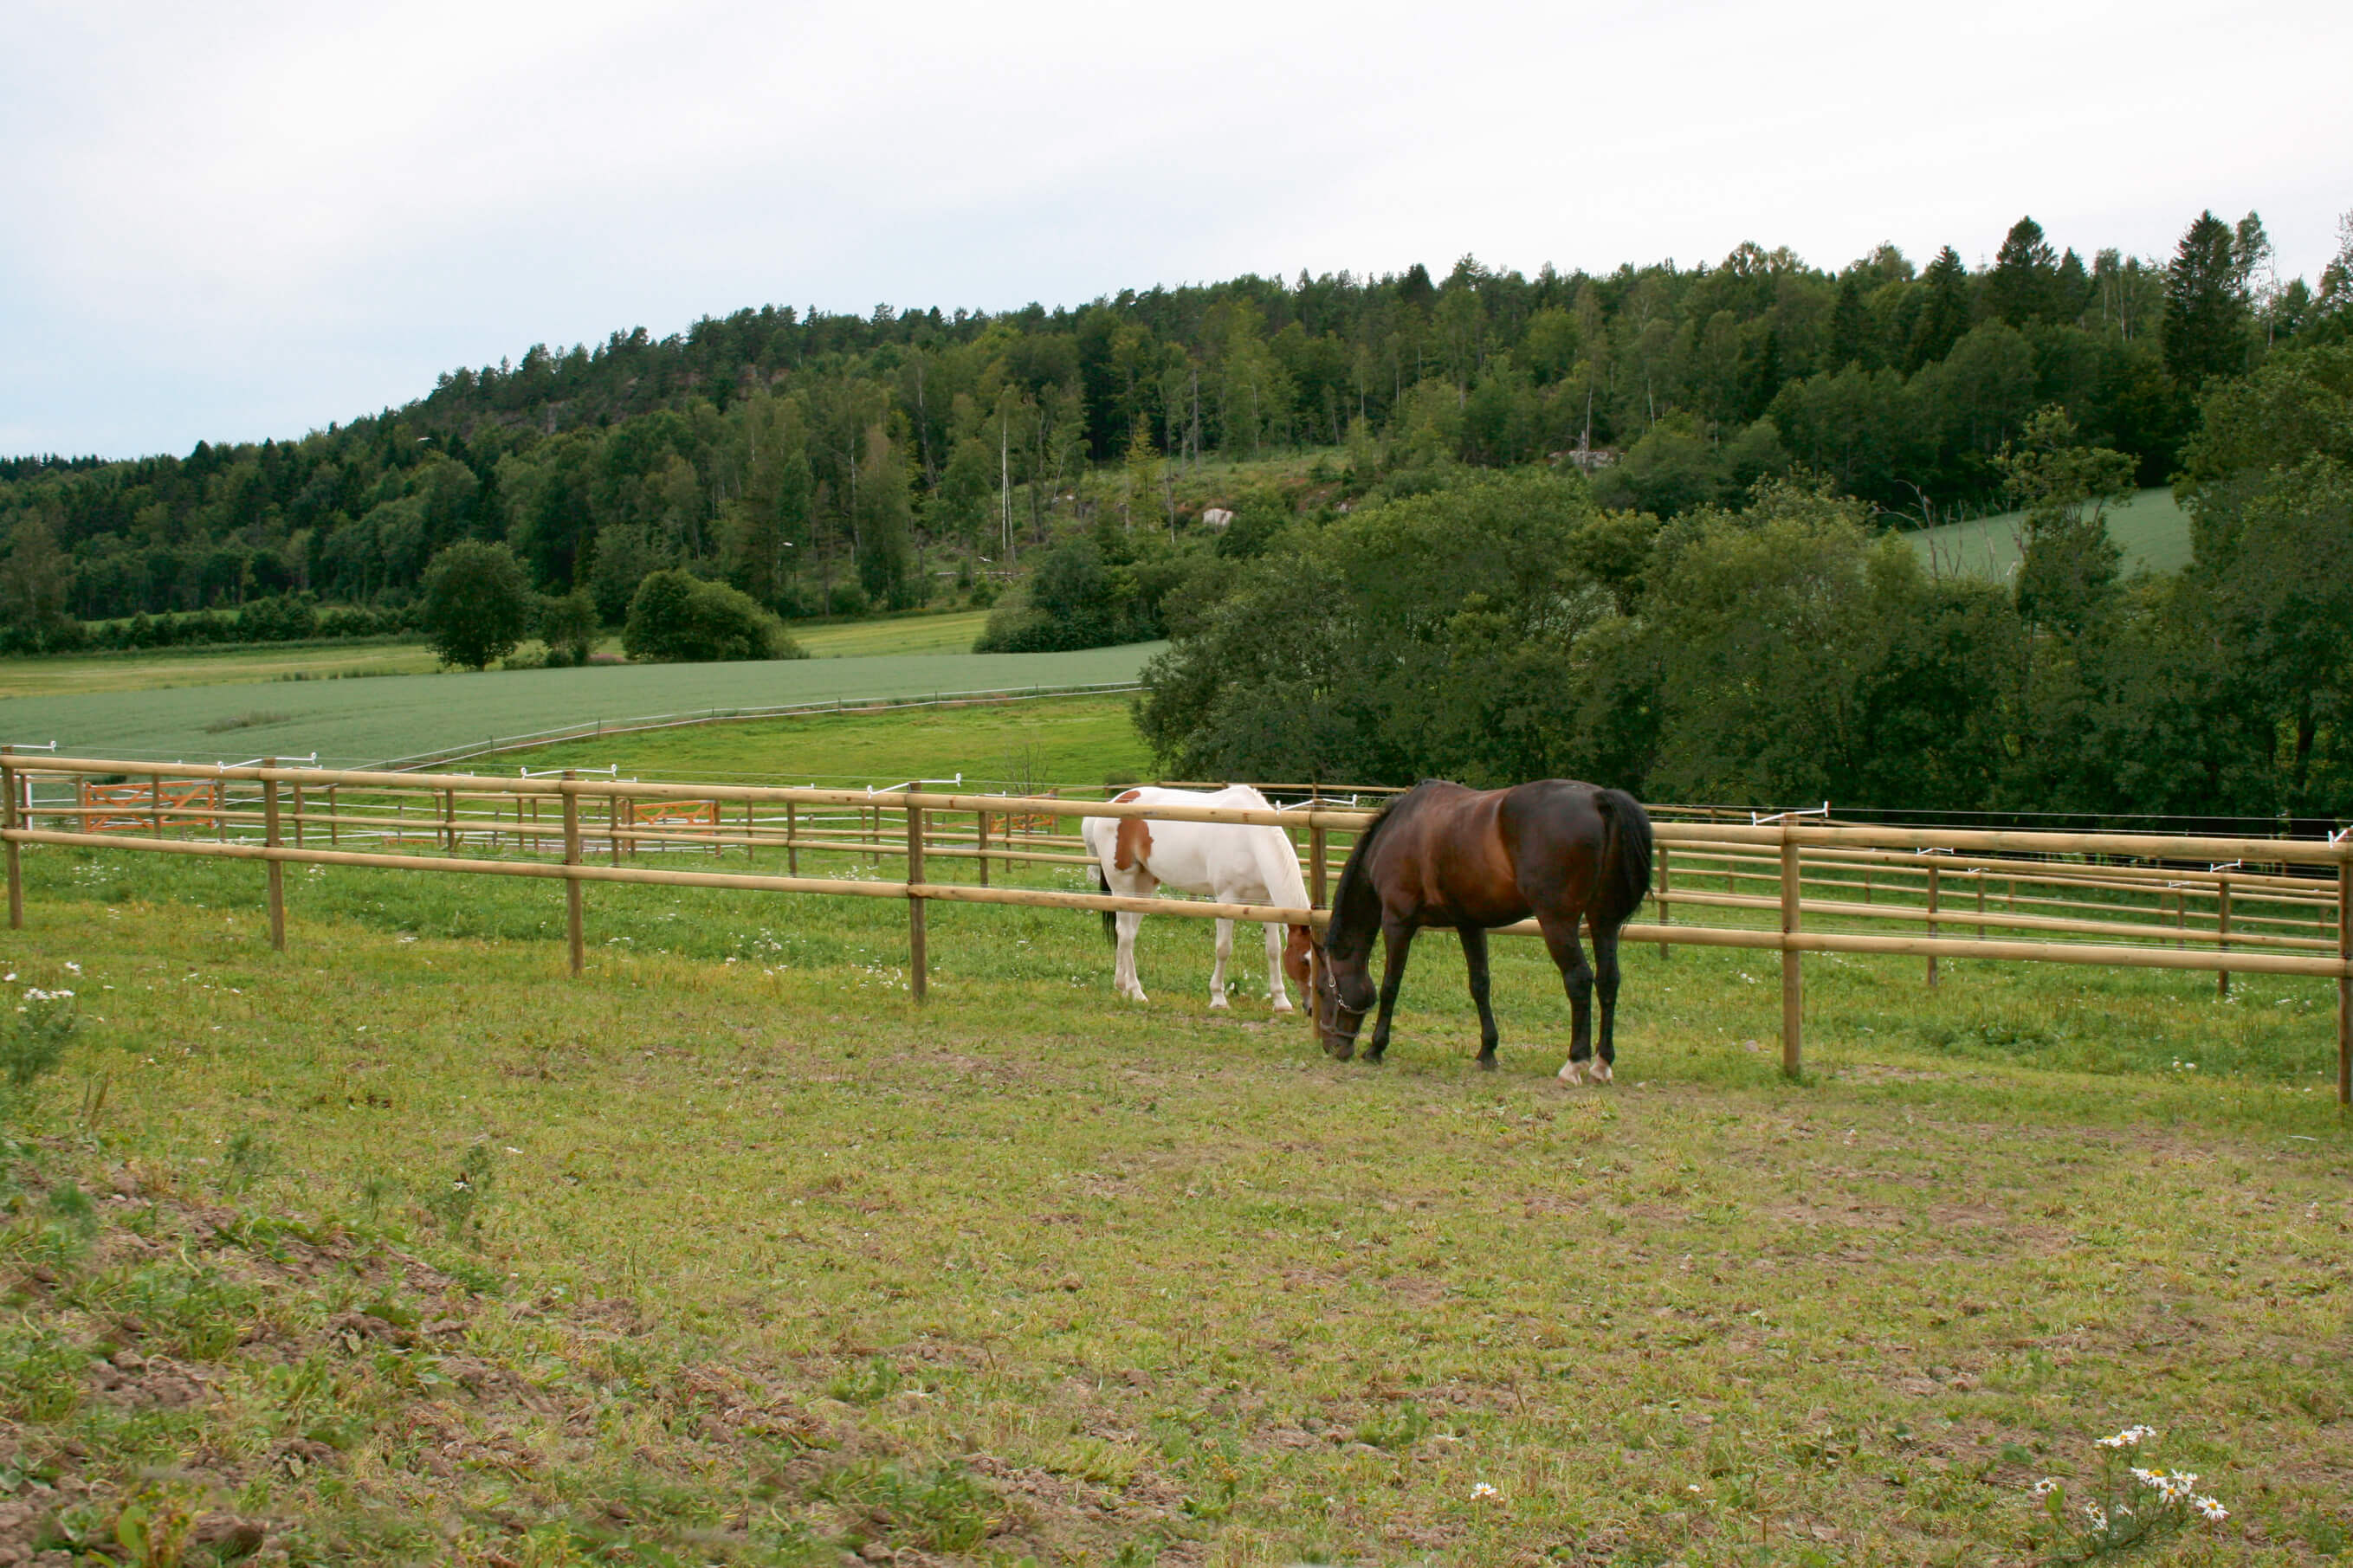 Zwei Pferde grasen auf separaten Koppeln. Die Pferdekoppeln sind durch einen Pferdezaun mit halbgeschnittenen Latten getrennt.